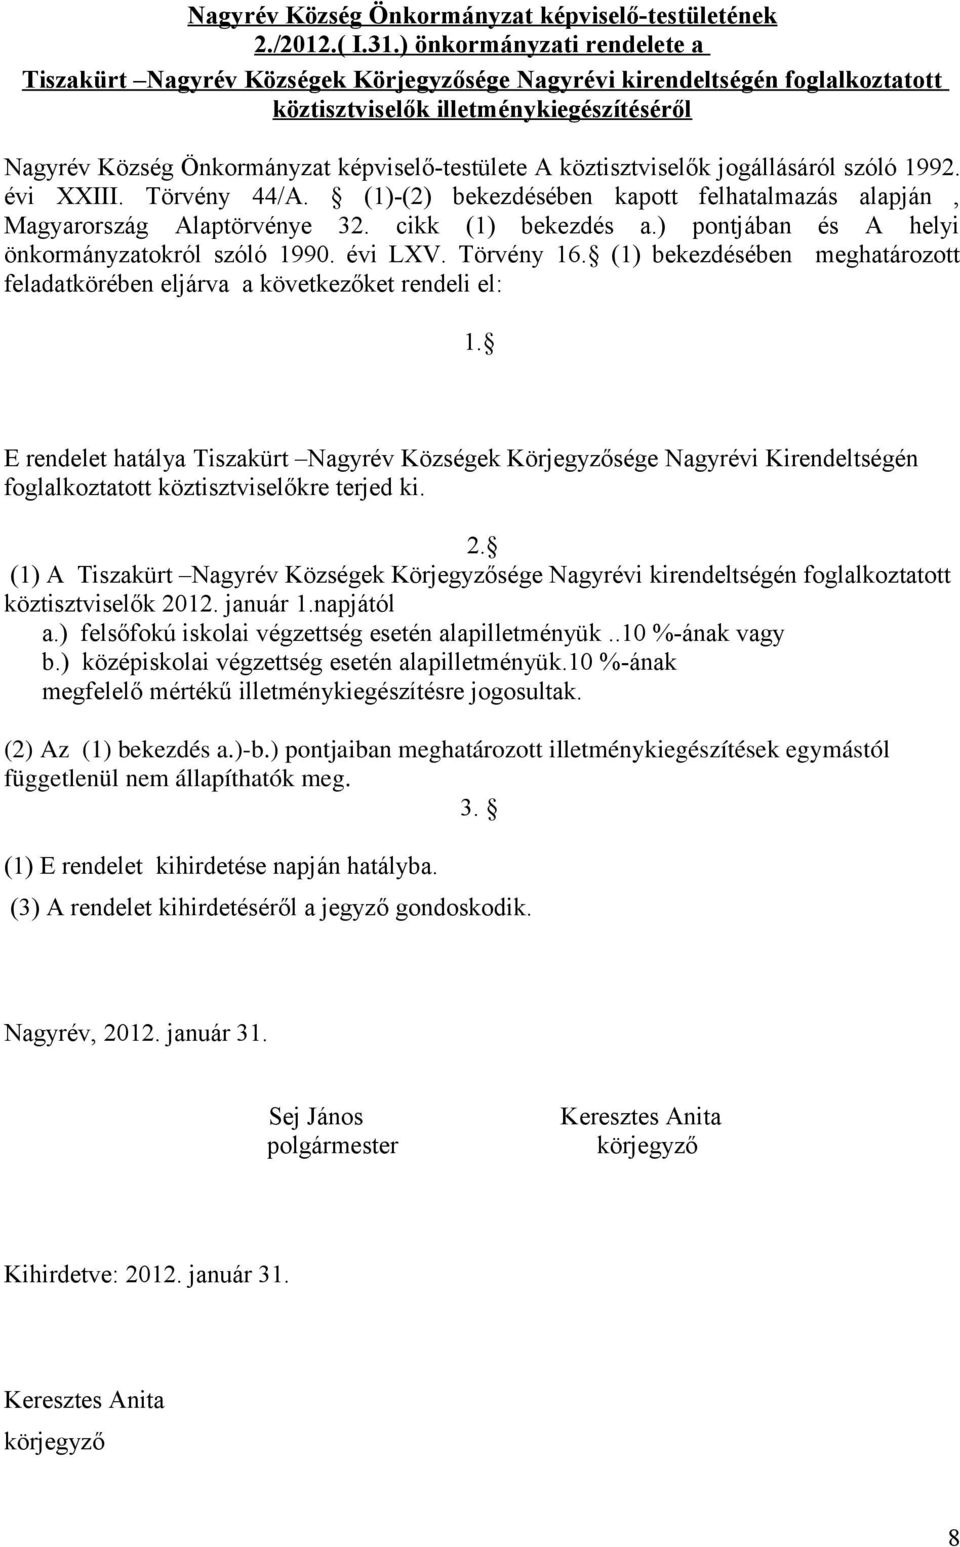 köztisztviselők jogállásáról szóló 1992. évi XXIII. Törvény 44/A. (1)-(2) bekezdésében kapott felhatalmazás alapján, Magyarország Alaptörvénye 32. cikk (1) bekezdés a.